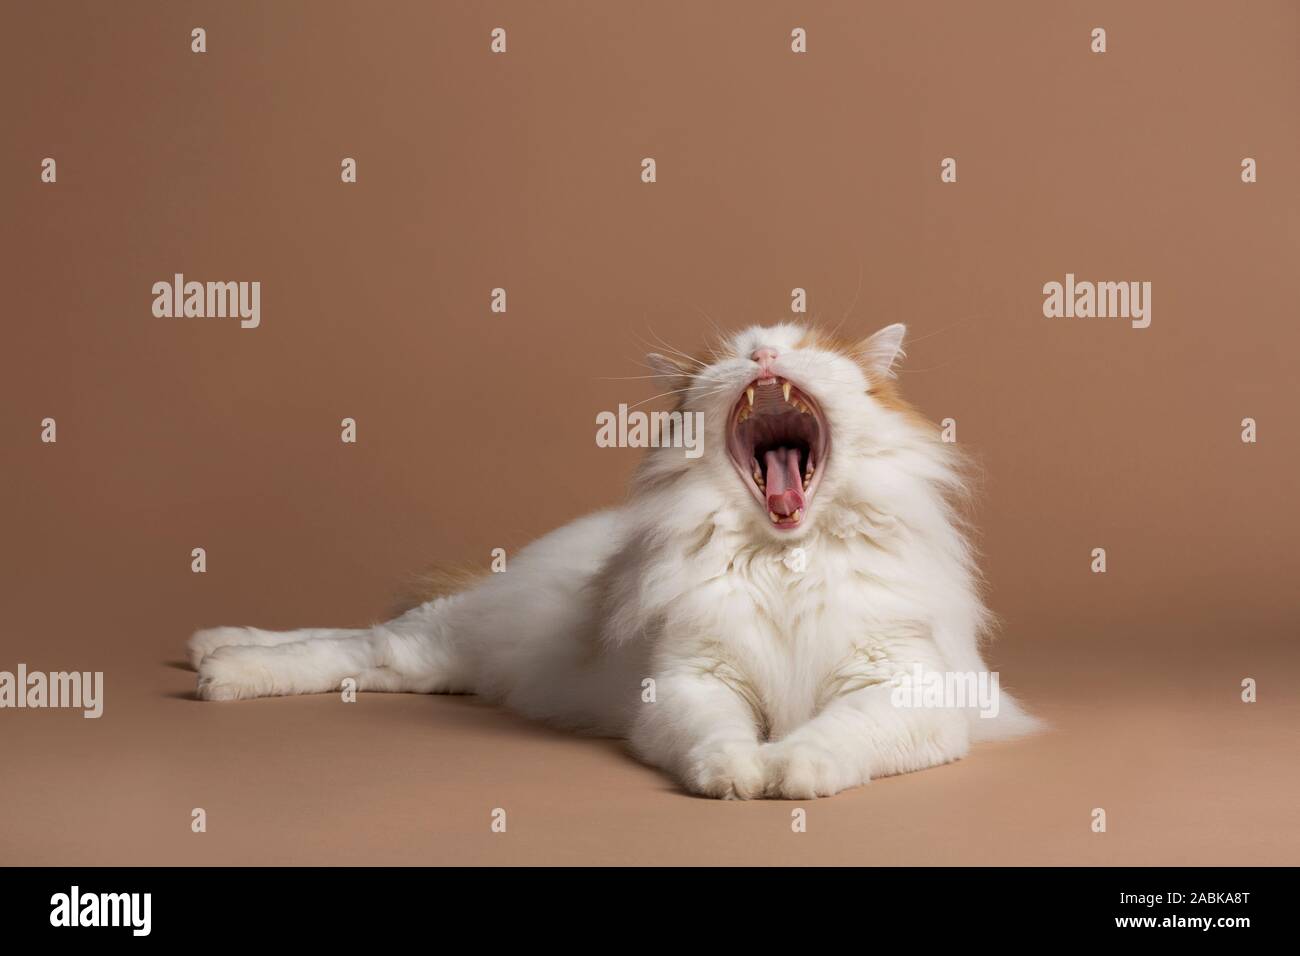 Isolierte türkische Van Katze zur Festlegung gähnen, auf einem braun beige Hintergrund seiner scharfen Zähne und Zunge zeigen isoliert. Weißen flauschigen Angora Fell und br Stockfoto